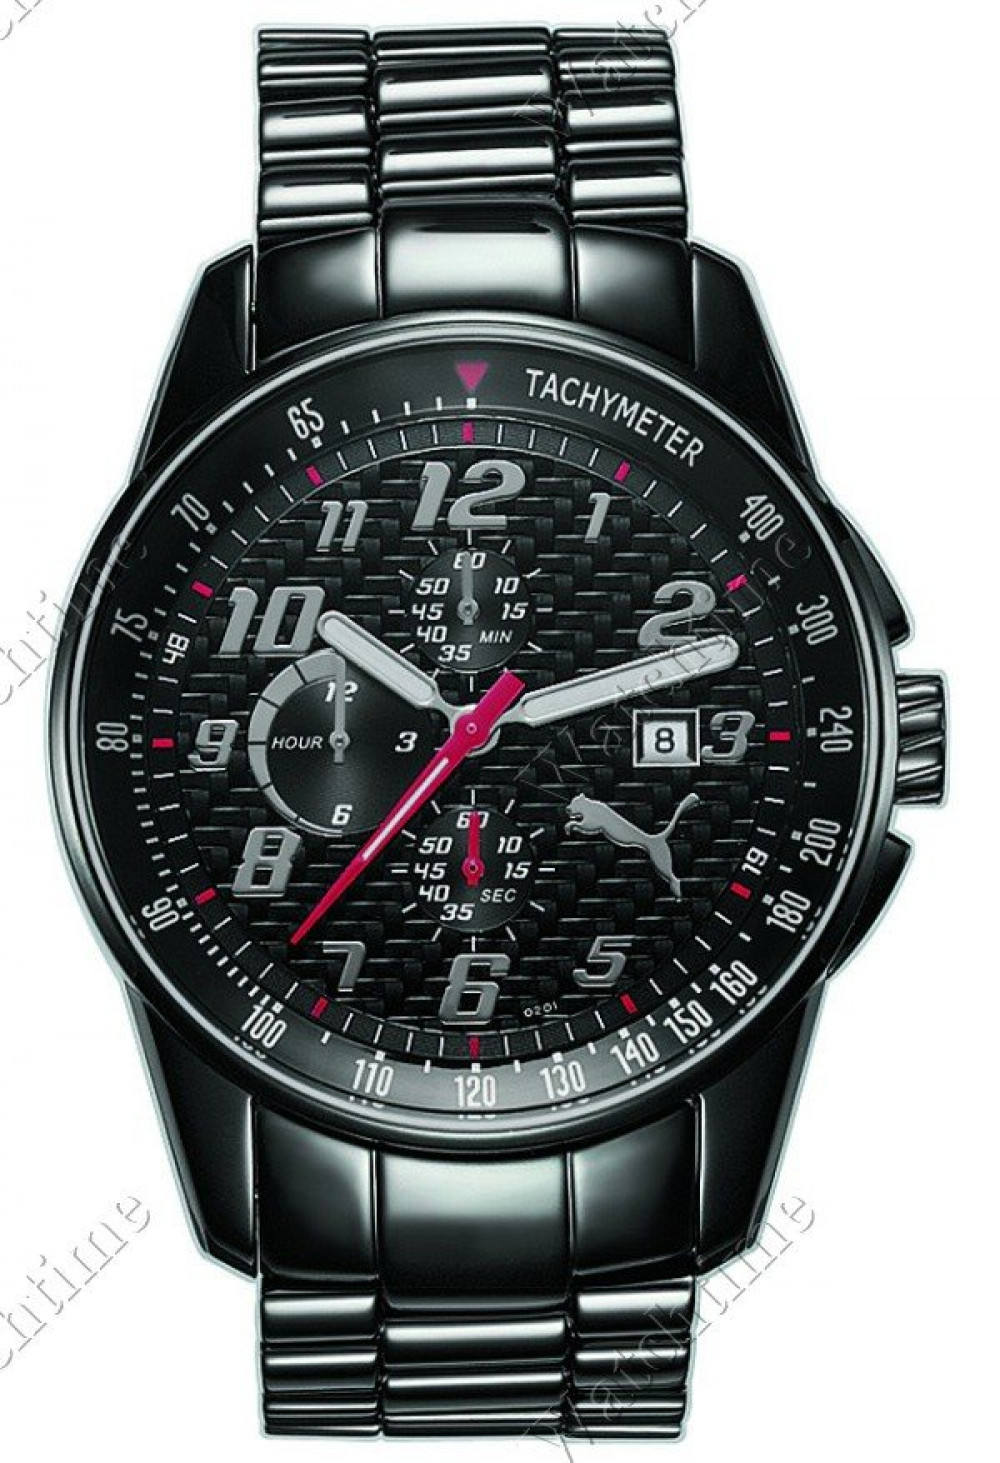 Zegarek firmy Puma Time, model Race